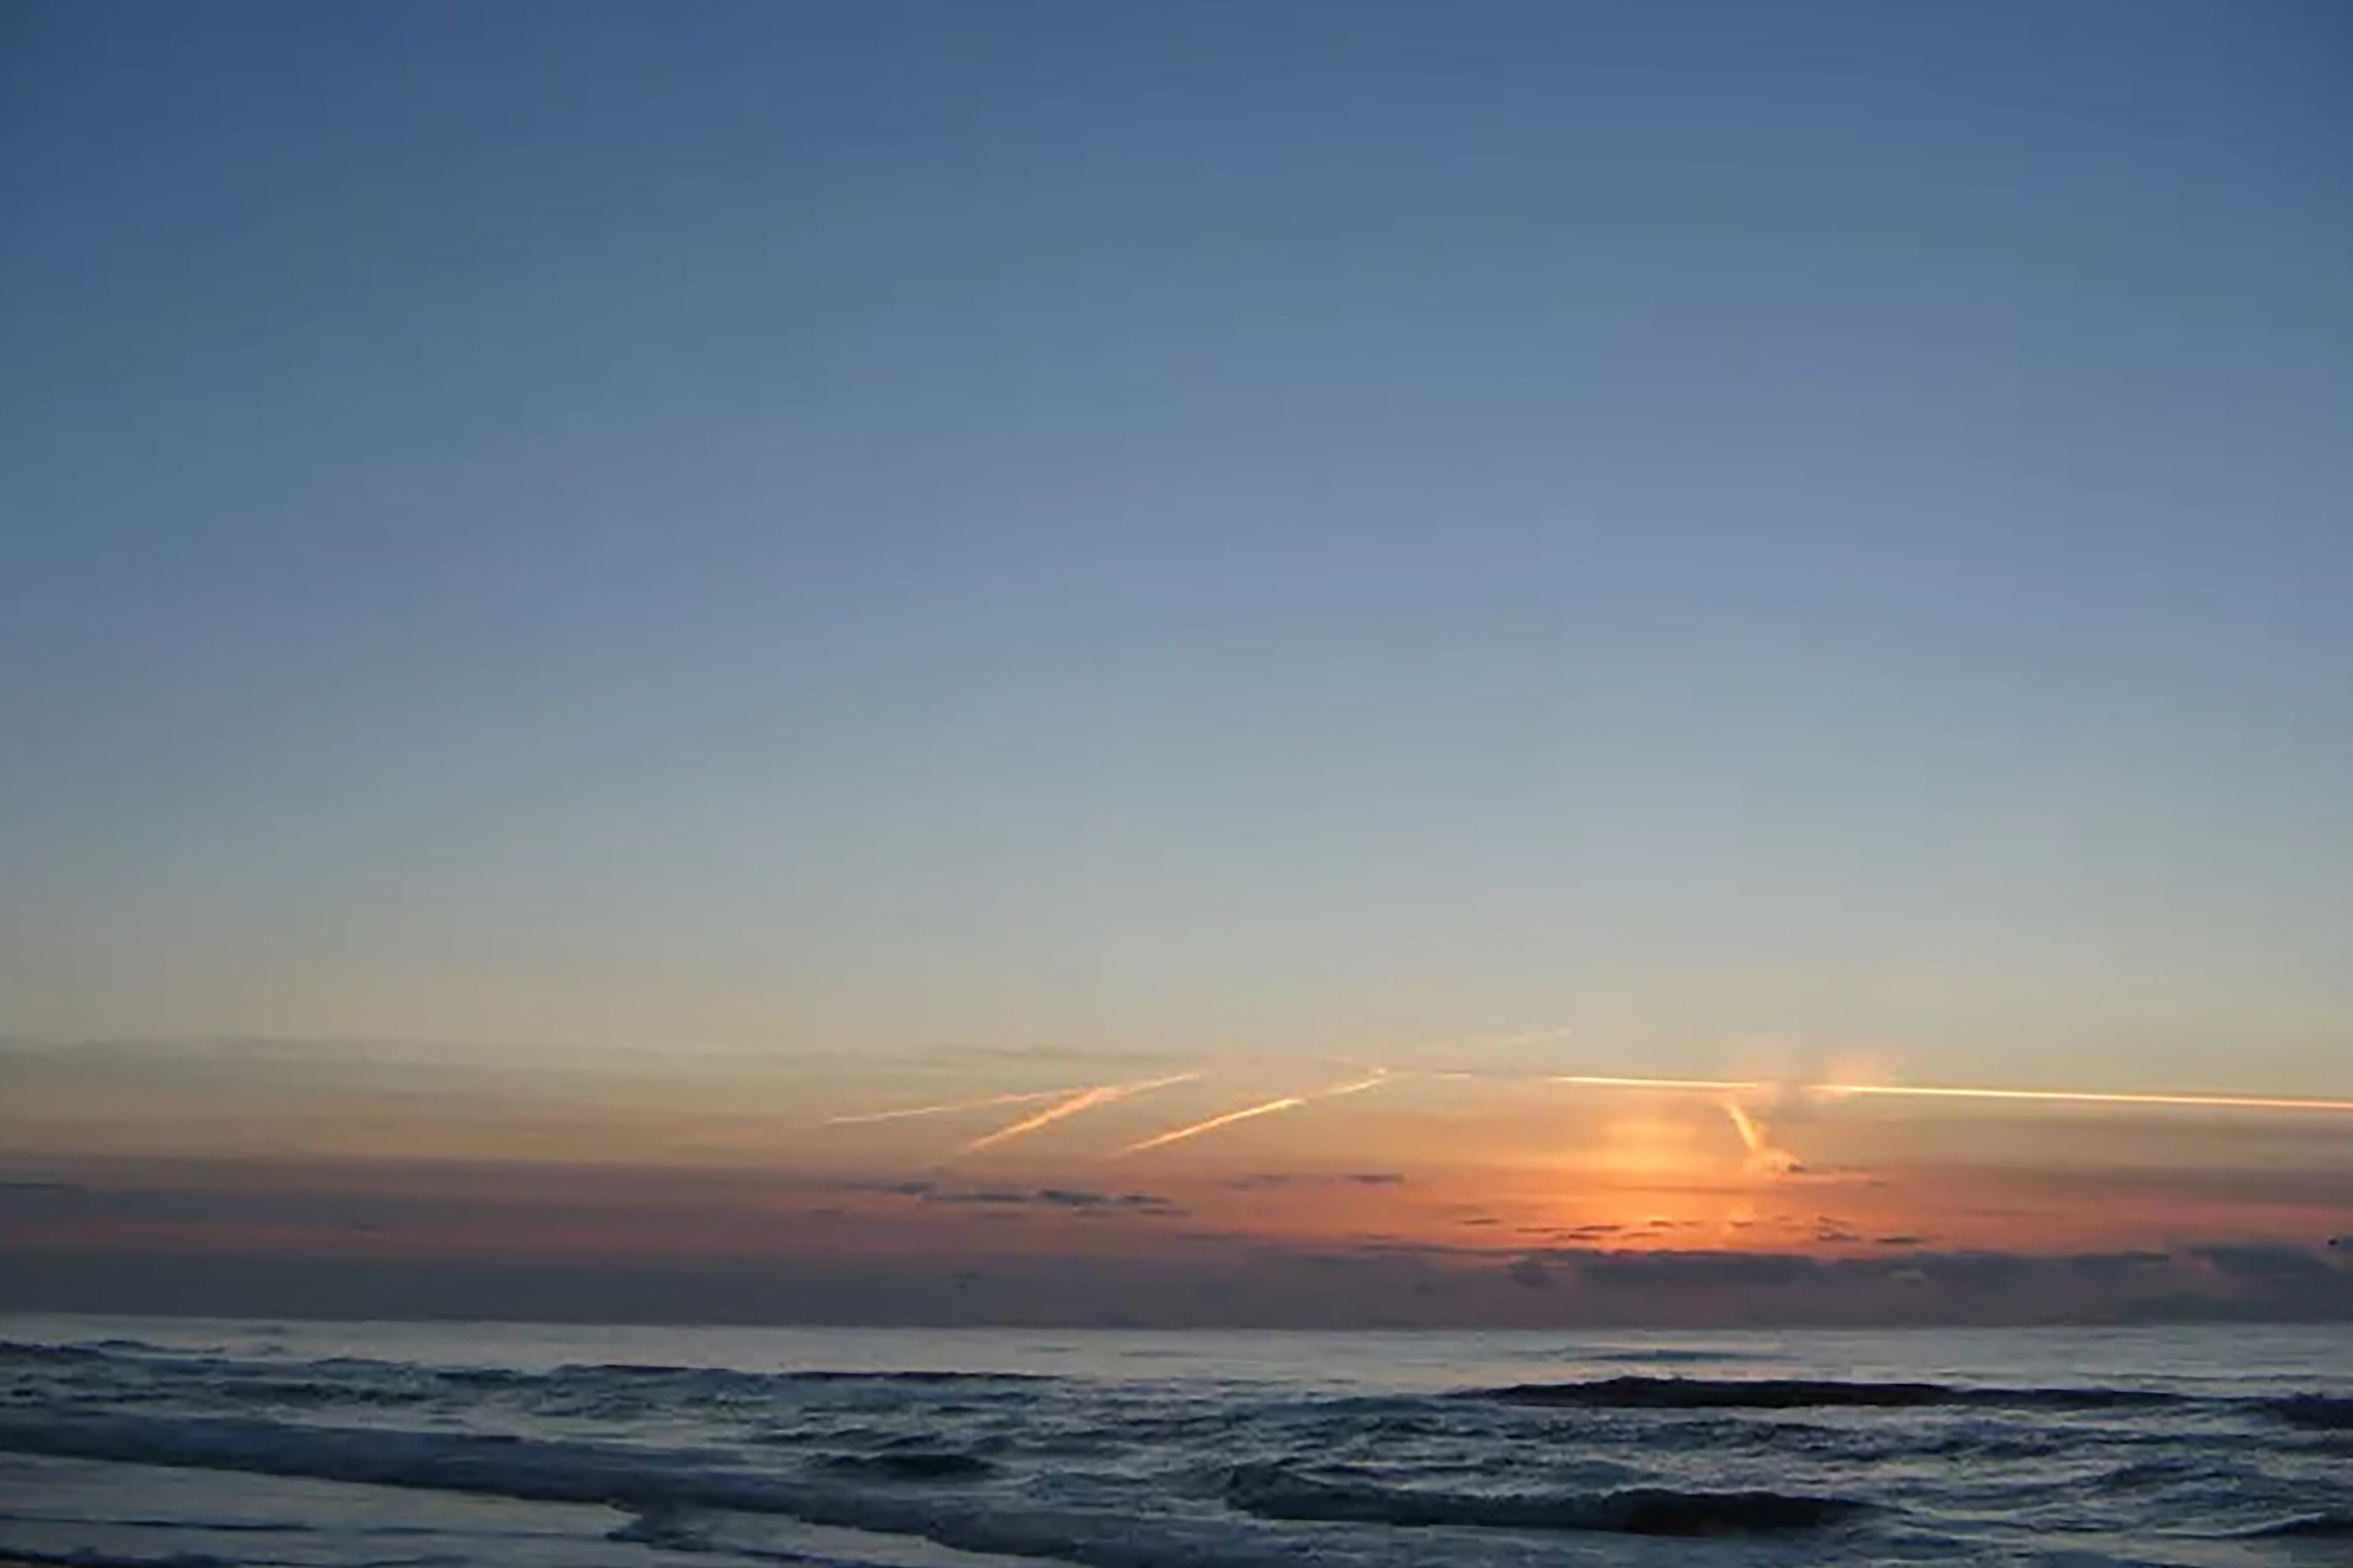 Du kan nå stranden med sin vackra solnedgång till fots på cirka 10 minuter.